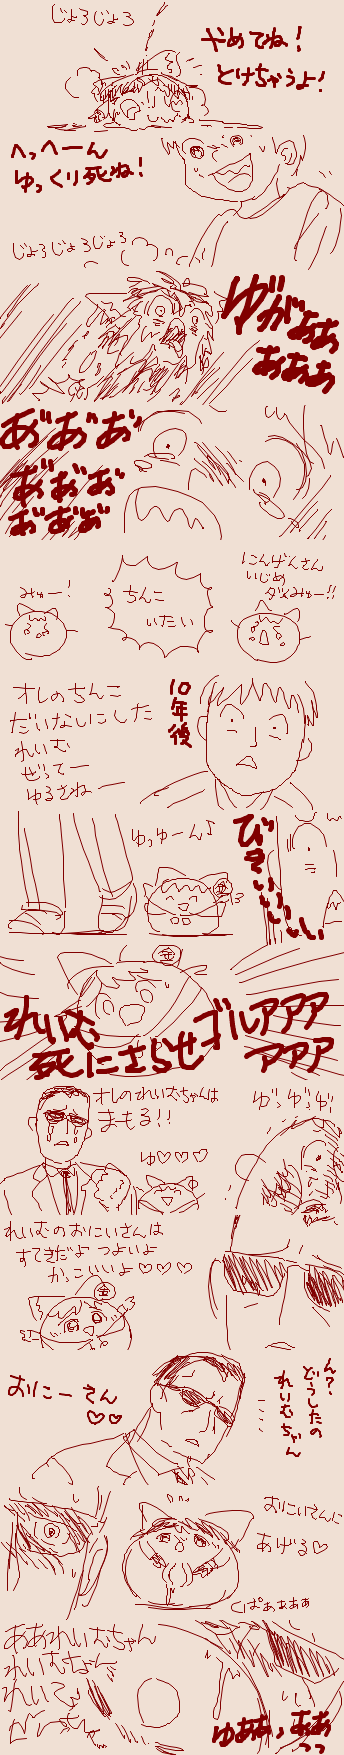 reimu and anon (touhou) drawn by rorinko